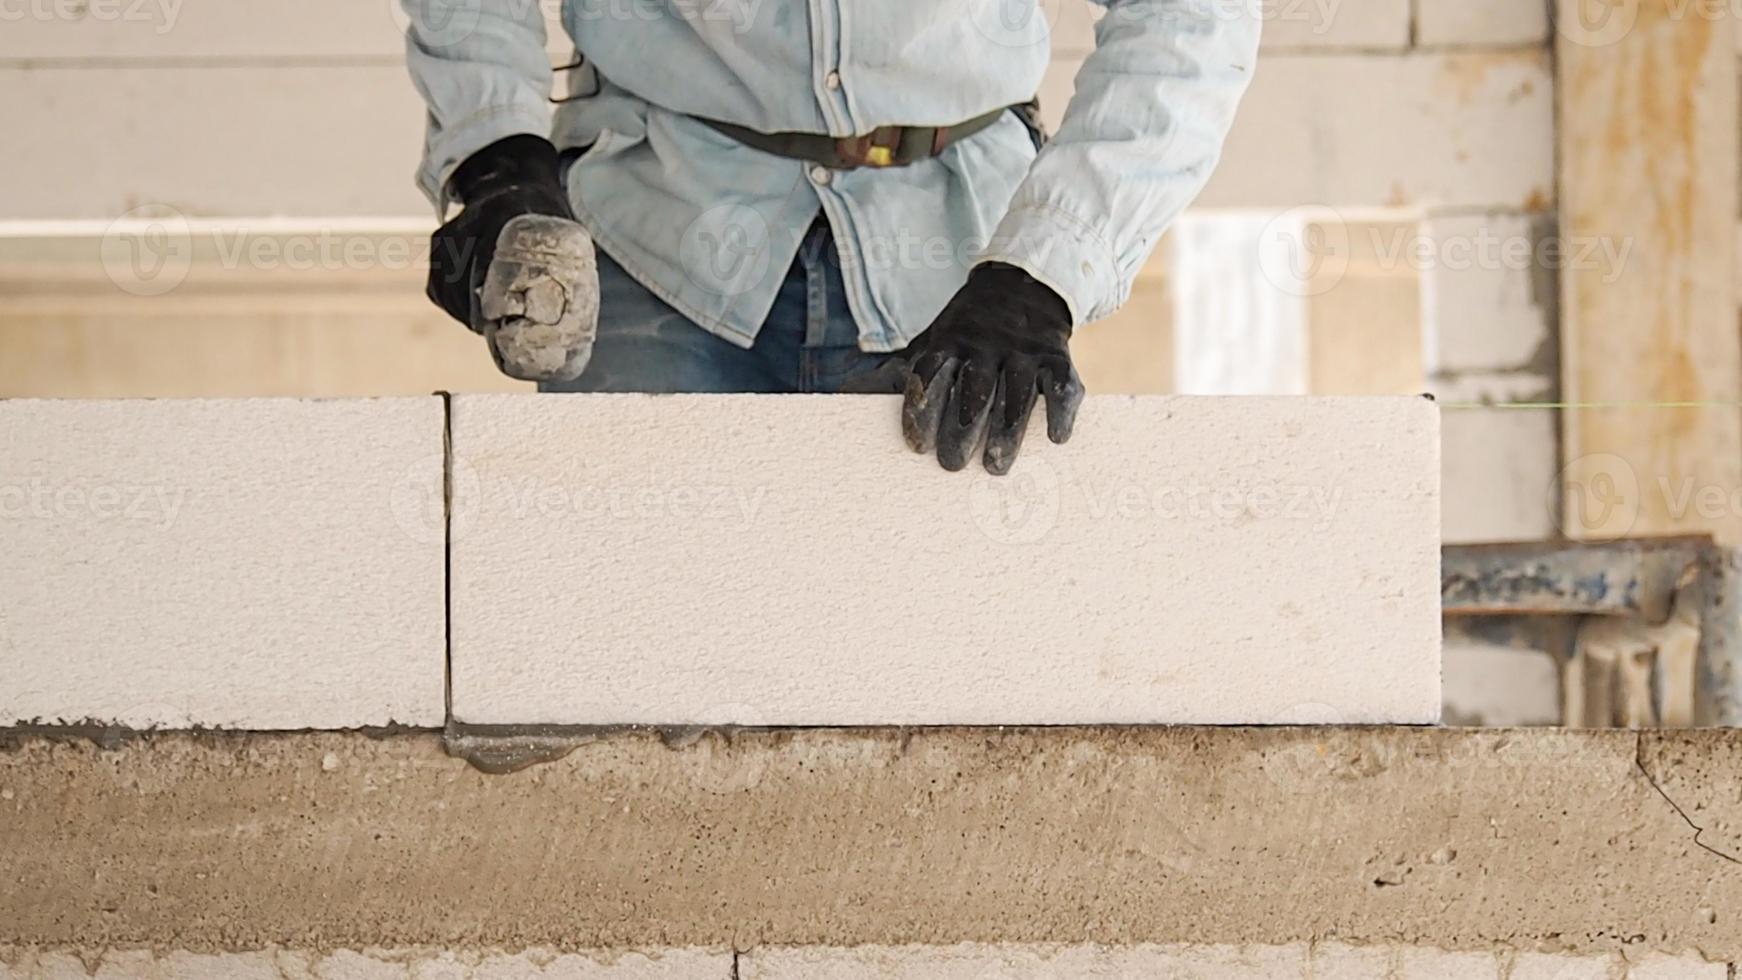 Bauarbeiter stellen weiße Leichtbetonblöcke her, die besser als Zementziegel sind und beim Bau von Wohnhäusern und öffentlichen Gebäuden beliebt sind. foto